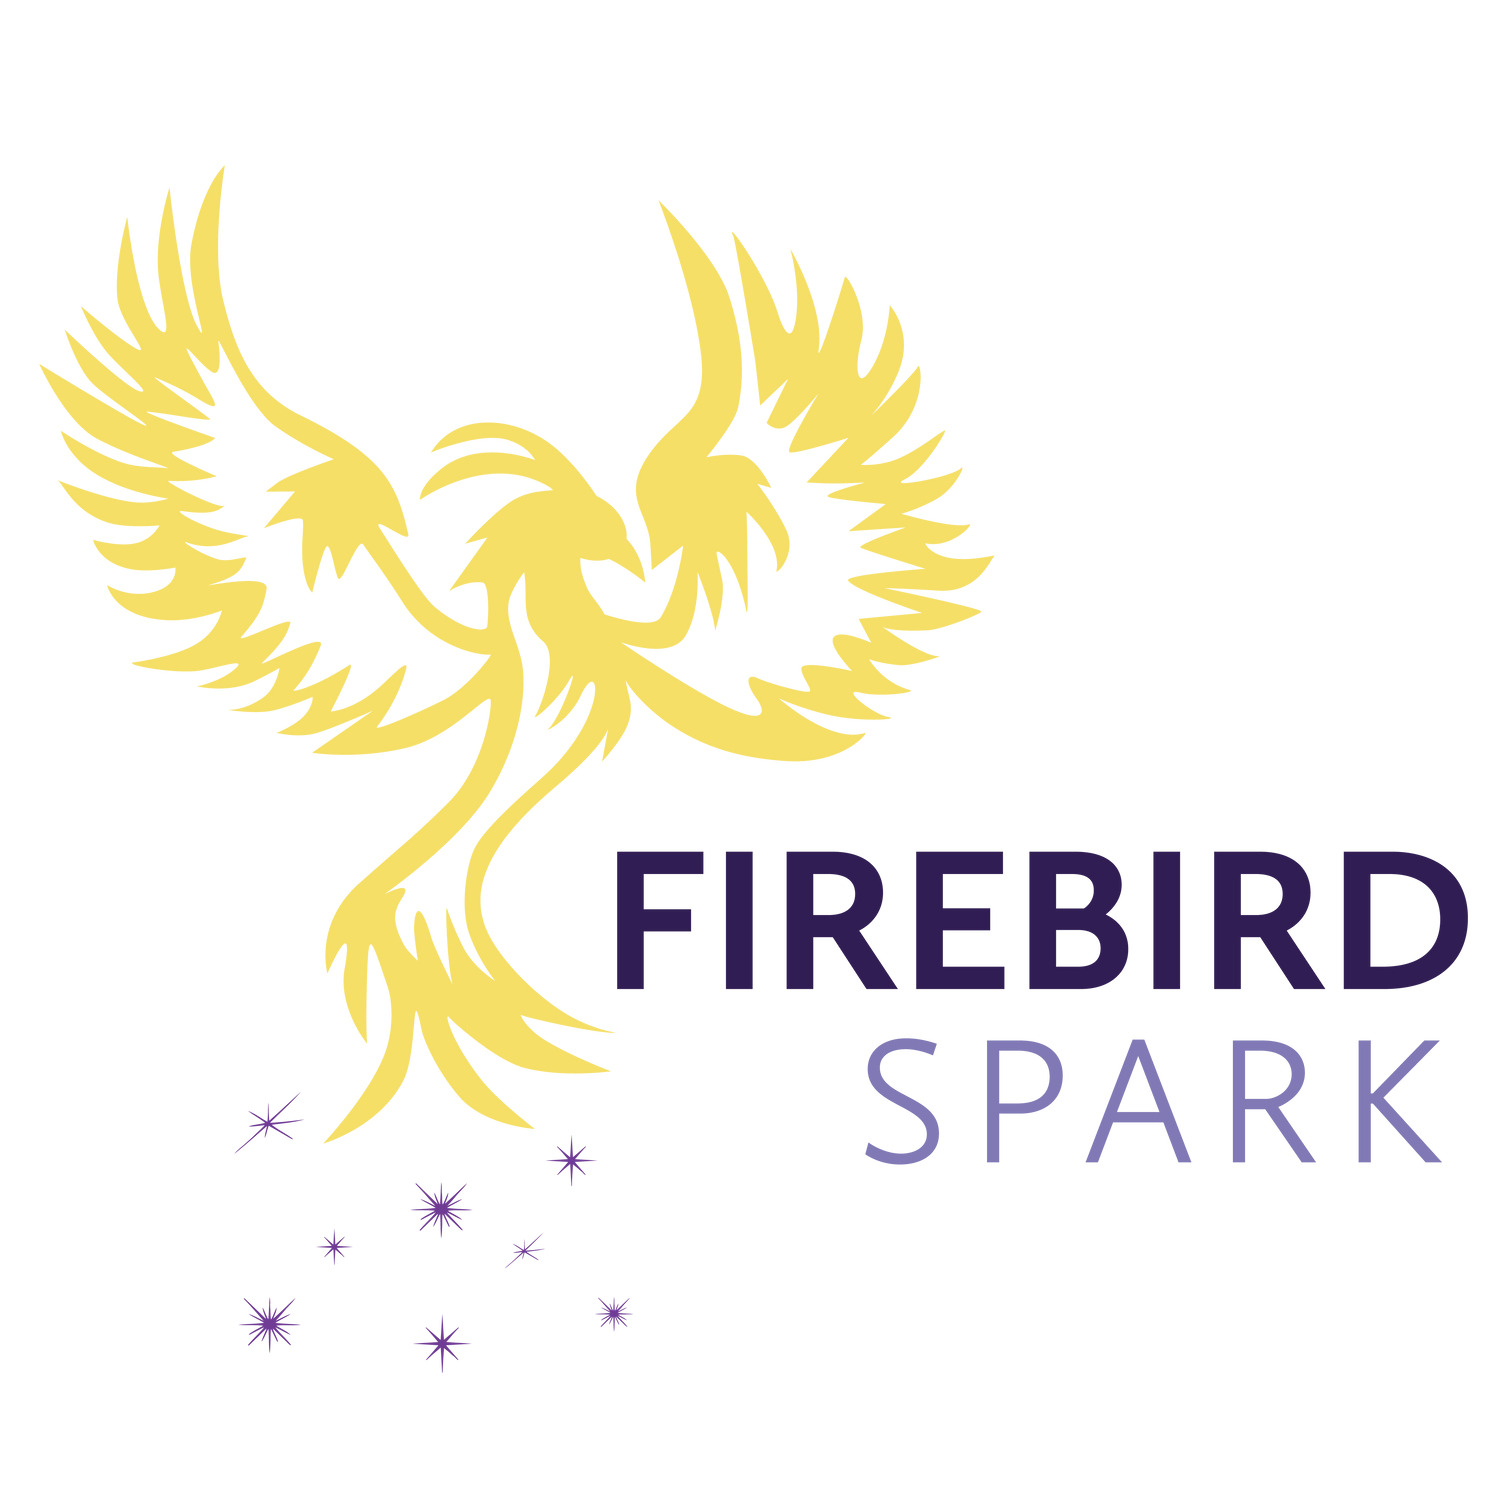 Firebird Spark Merchandise